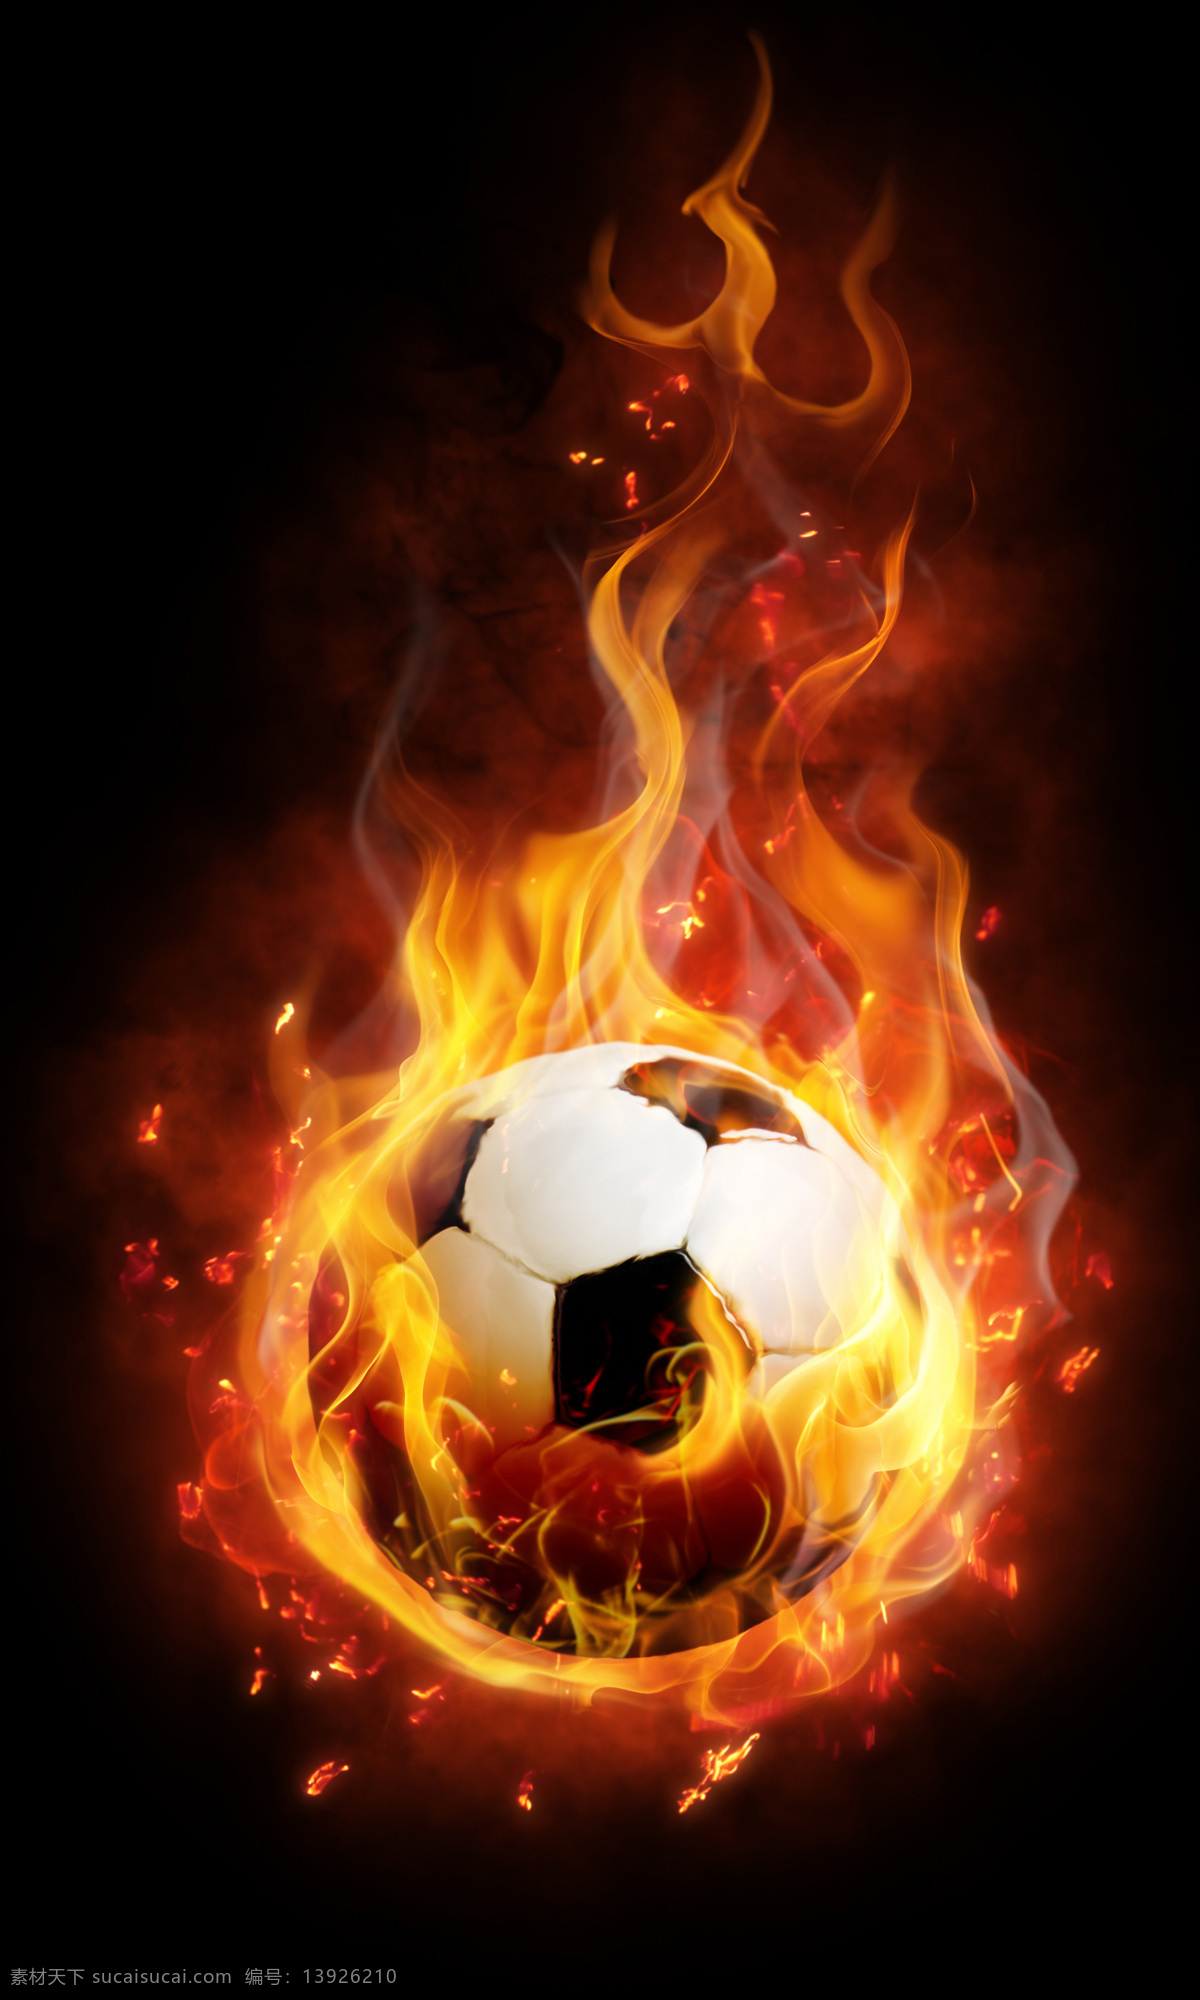 足球图片 火 火苗 火焰 球 体育运动 文化艺术 足球 足球设计素材 足球模板下载